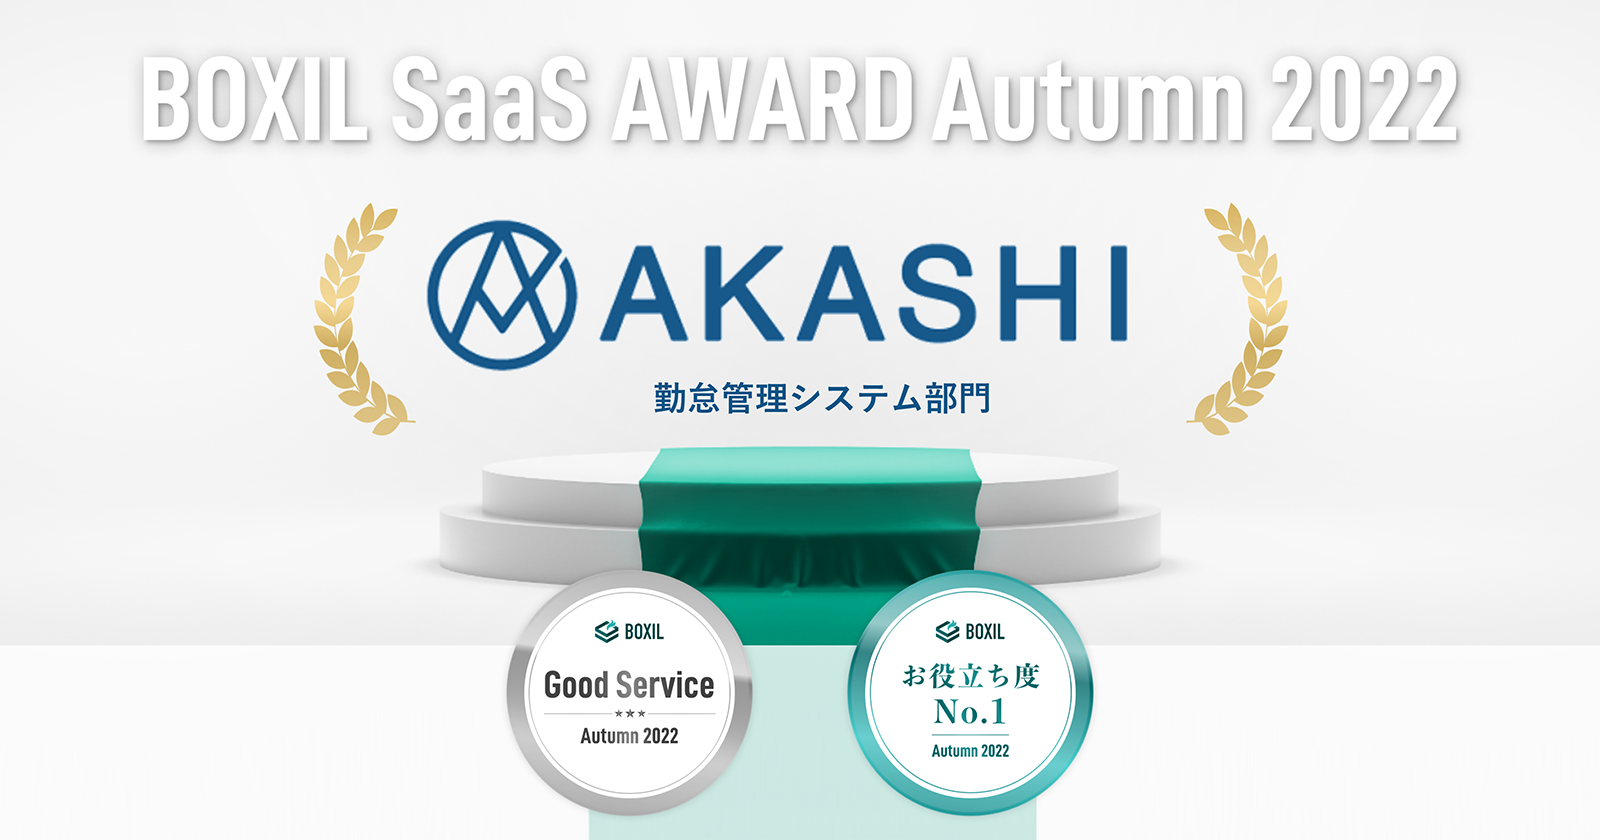 クラウド型勤怠管理システム「AKASHI」 「BOXIL SaaS AWARD Autumn 2022」の 勤怠管理システム部門にて「Good Service」「お役立ち度No.1」を受賞